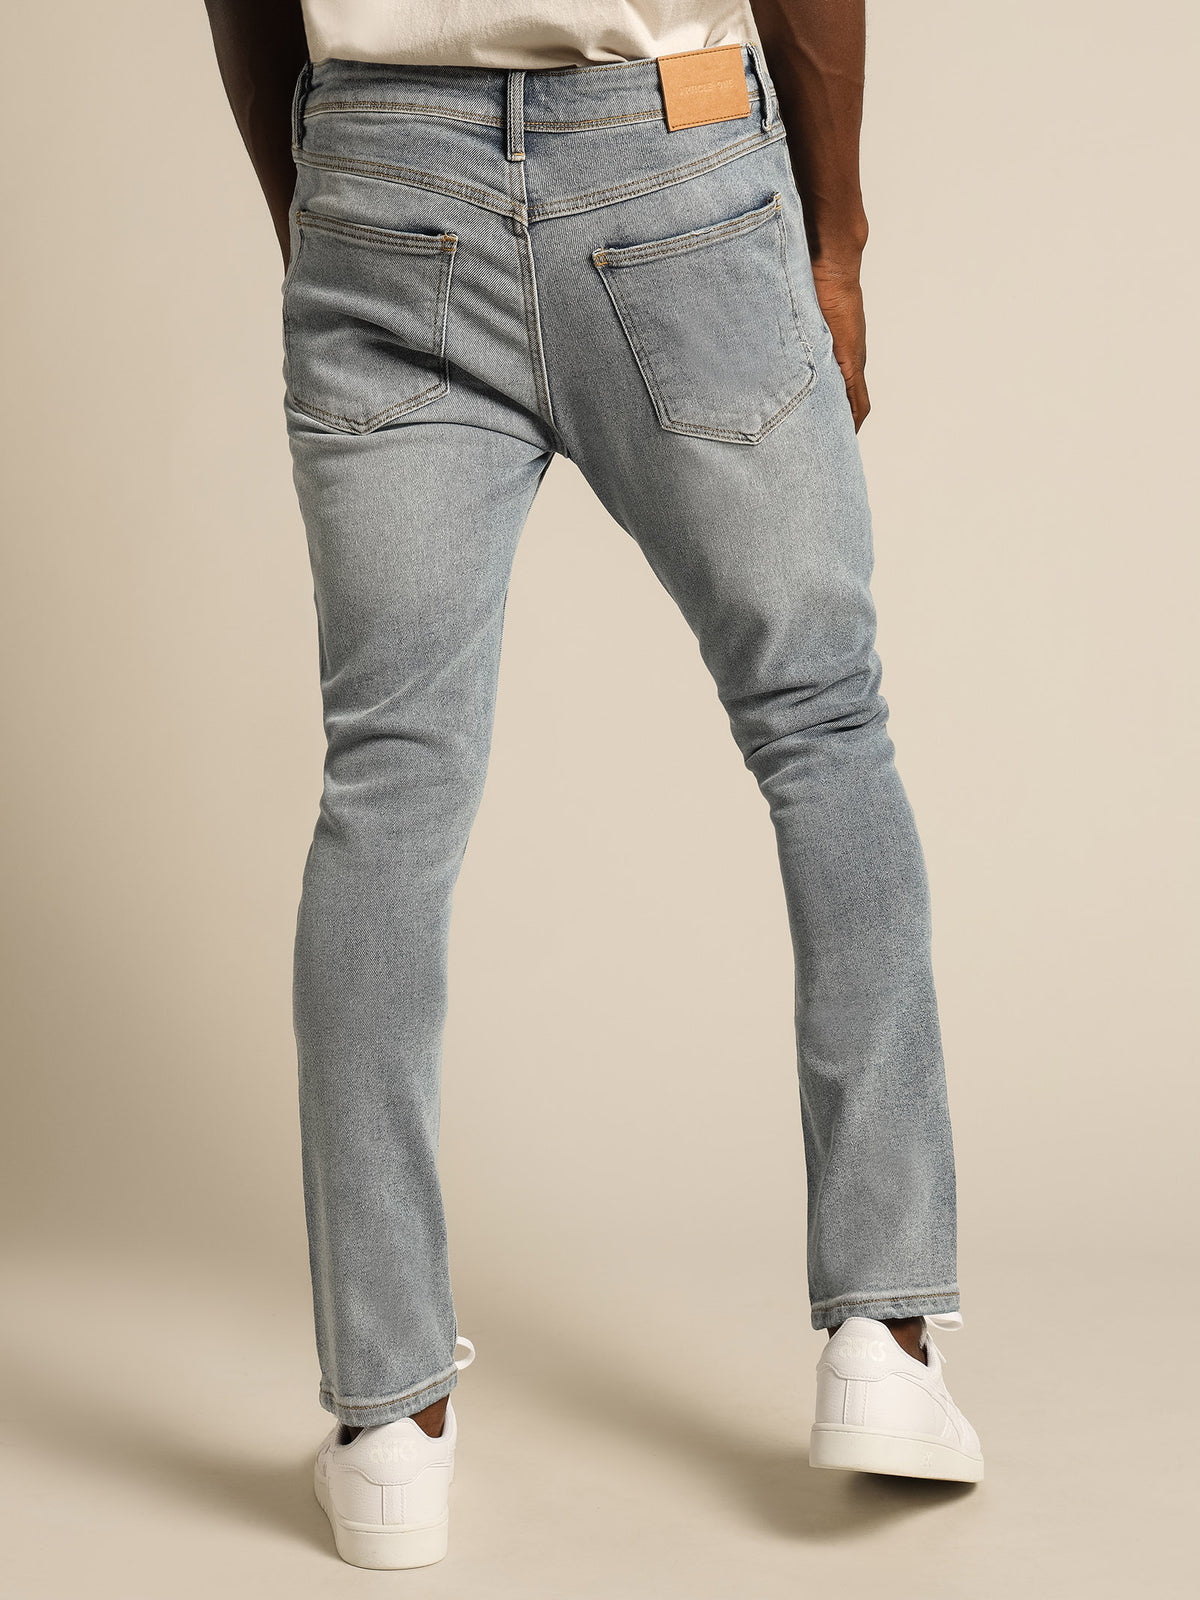 Zane Skinny Jeans in Mid Blue